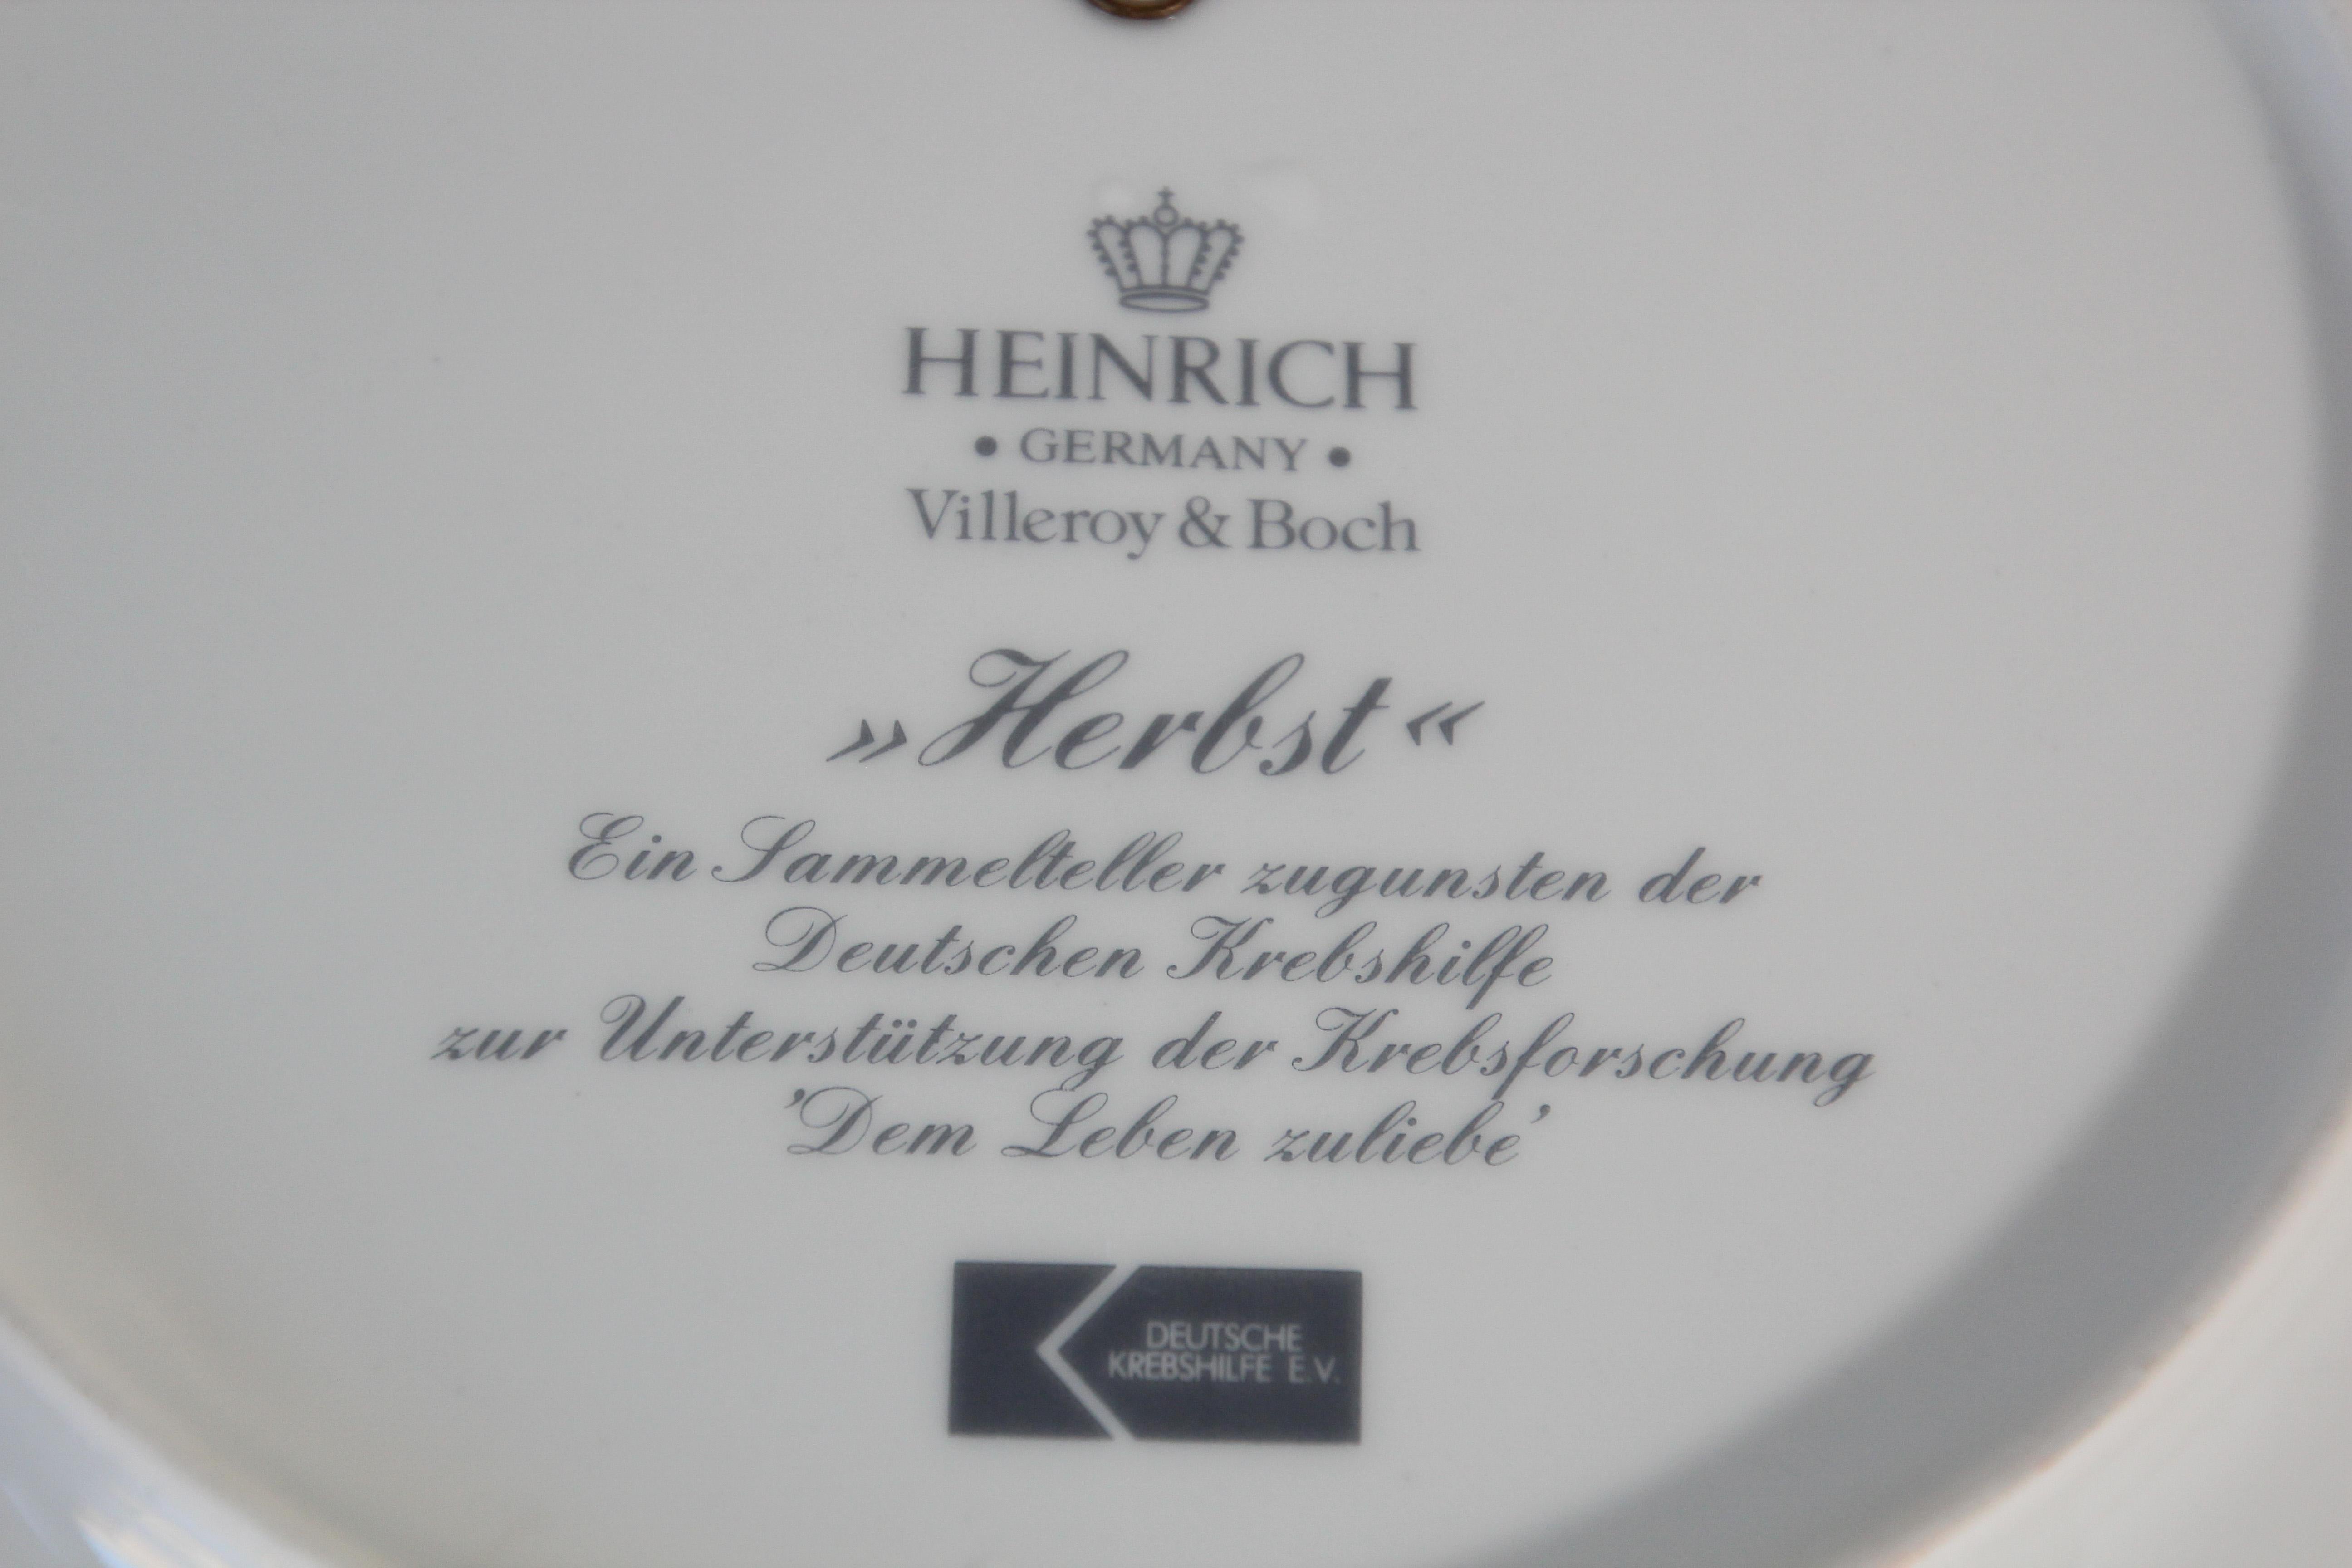 Heinrich Germany Villeroy & Boch 